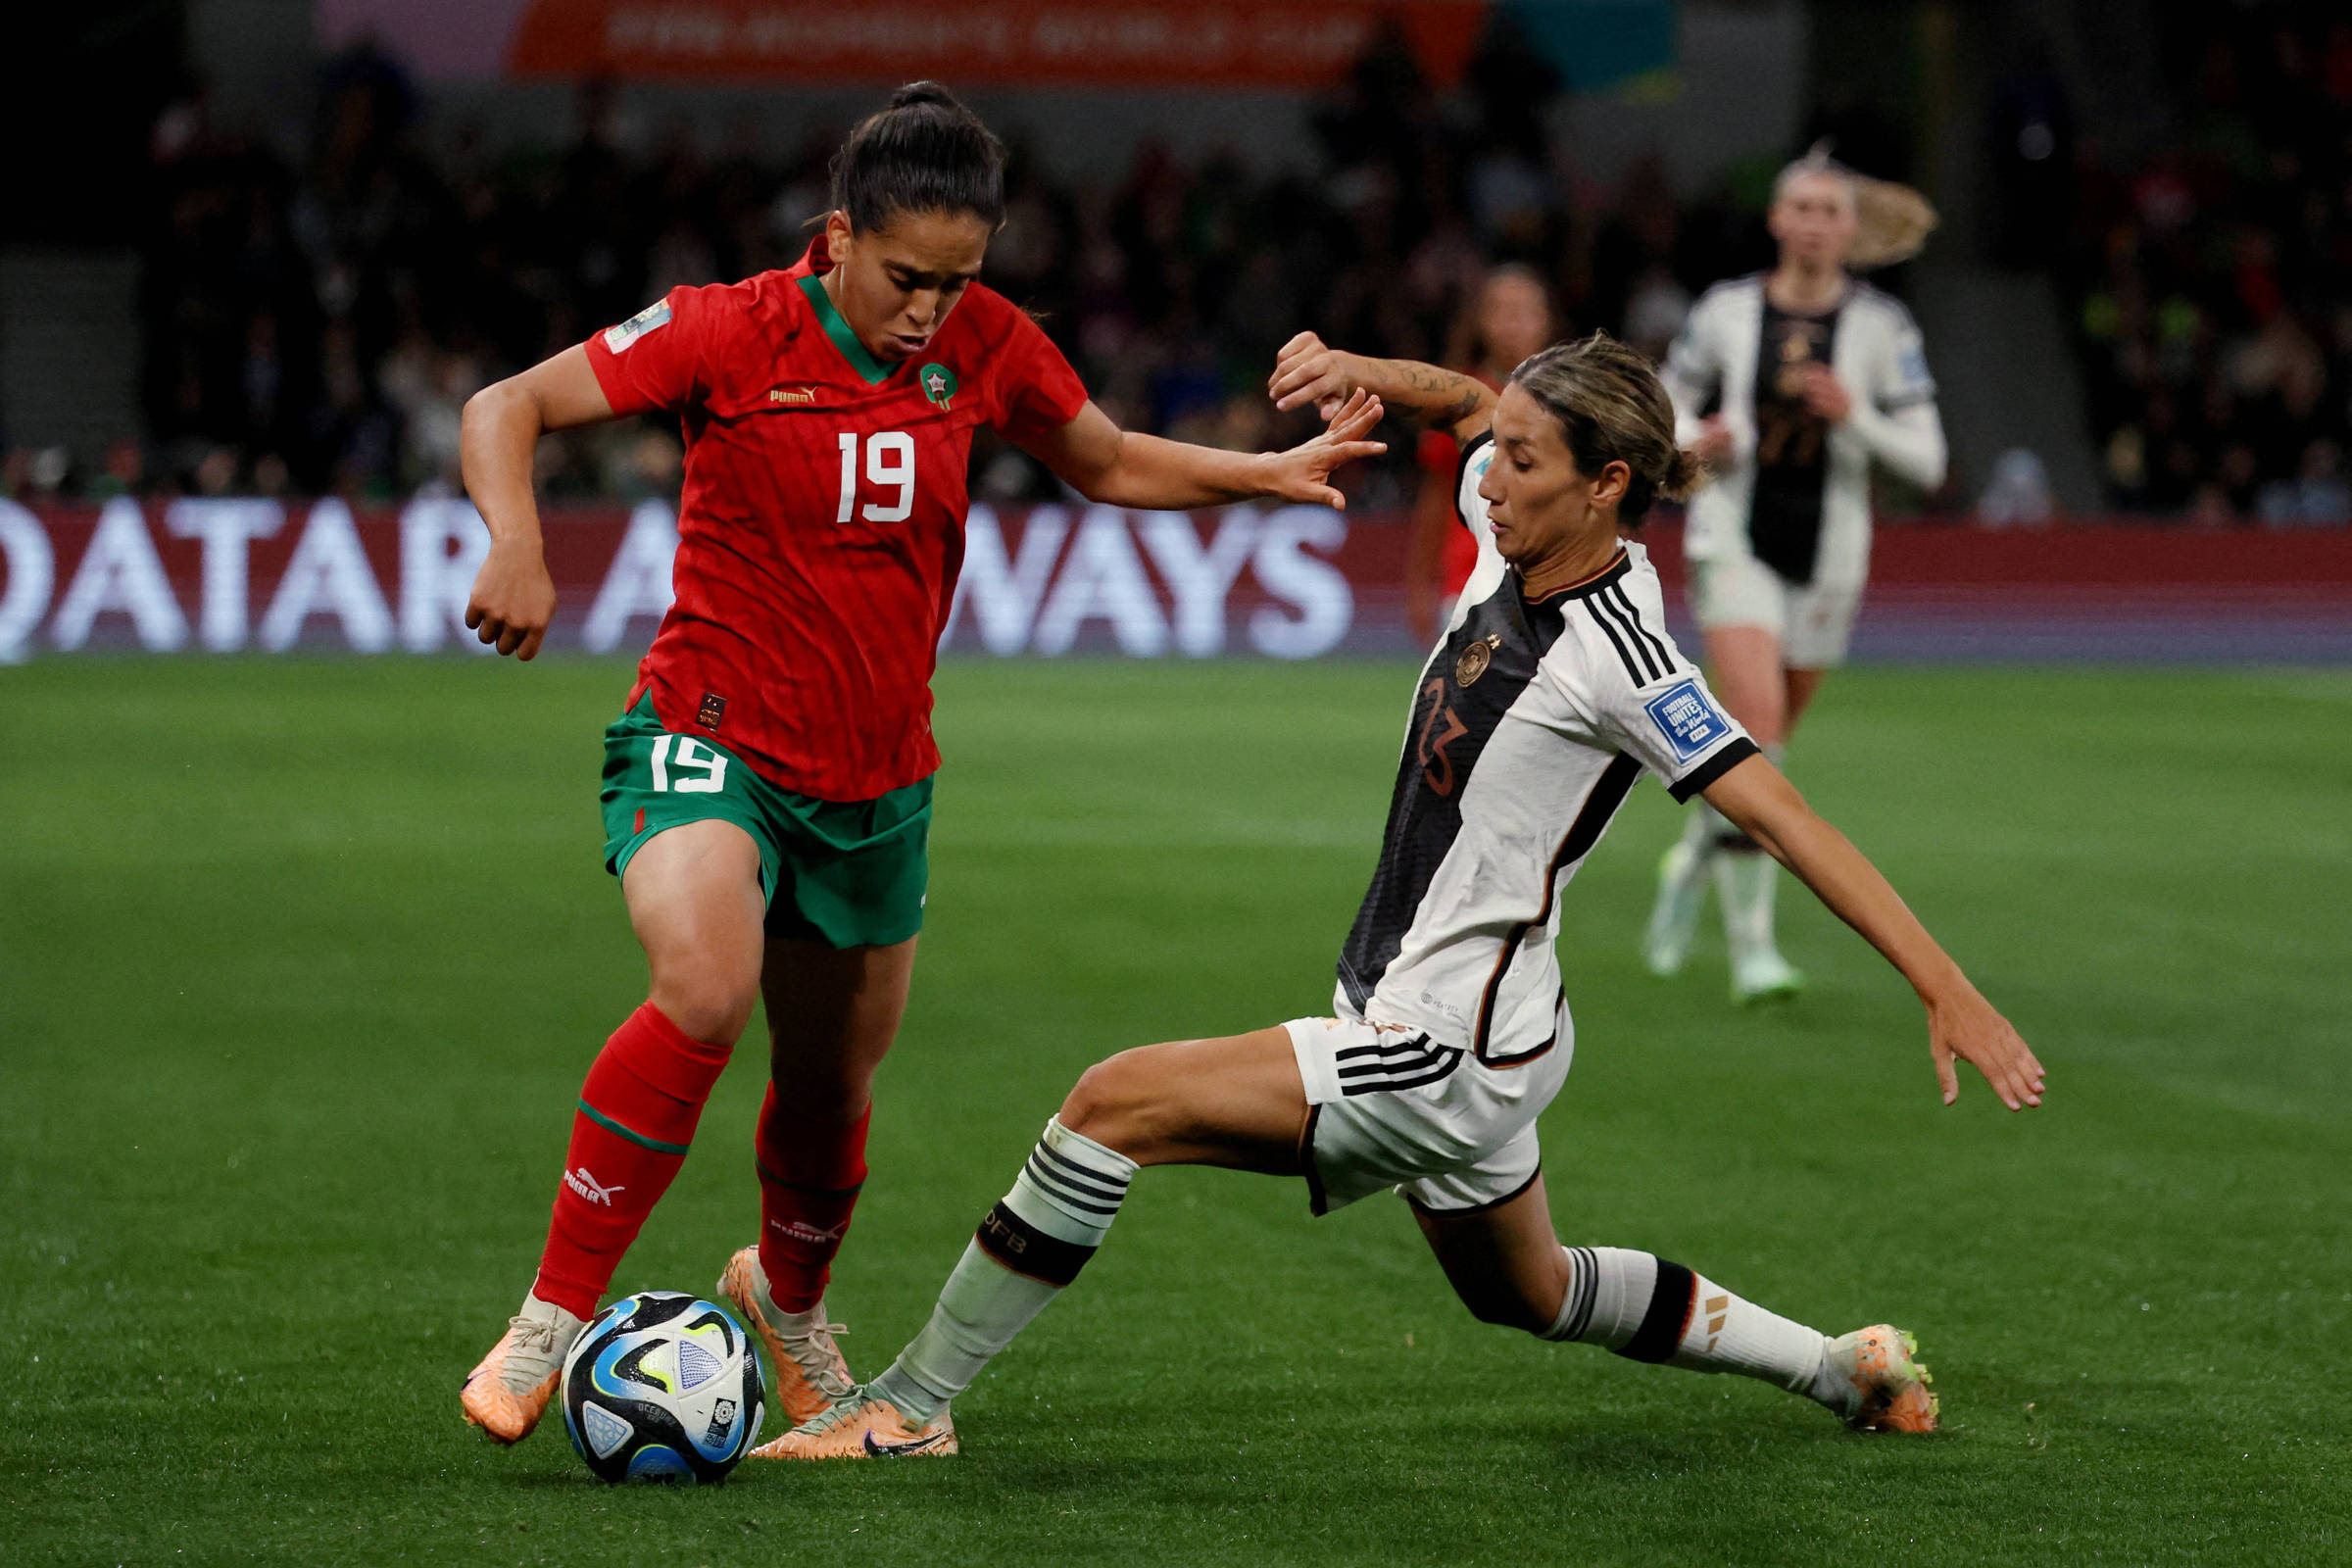 Saiba como Baixar Aplicativo para ver o Futebol Feminino na Copa